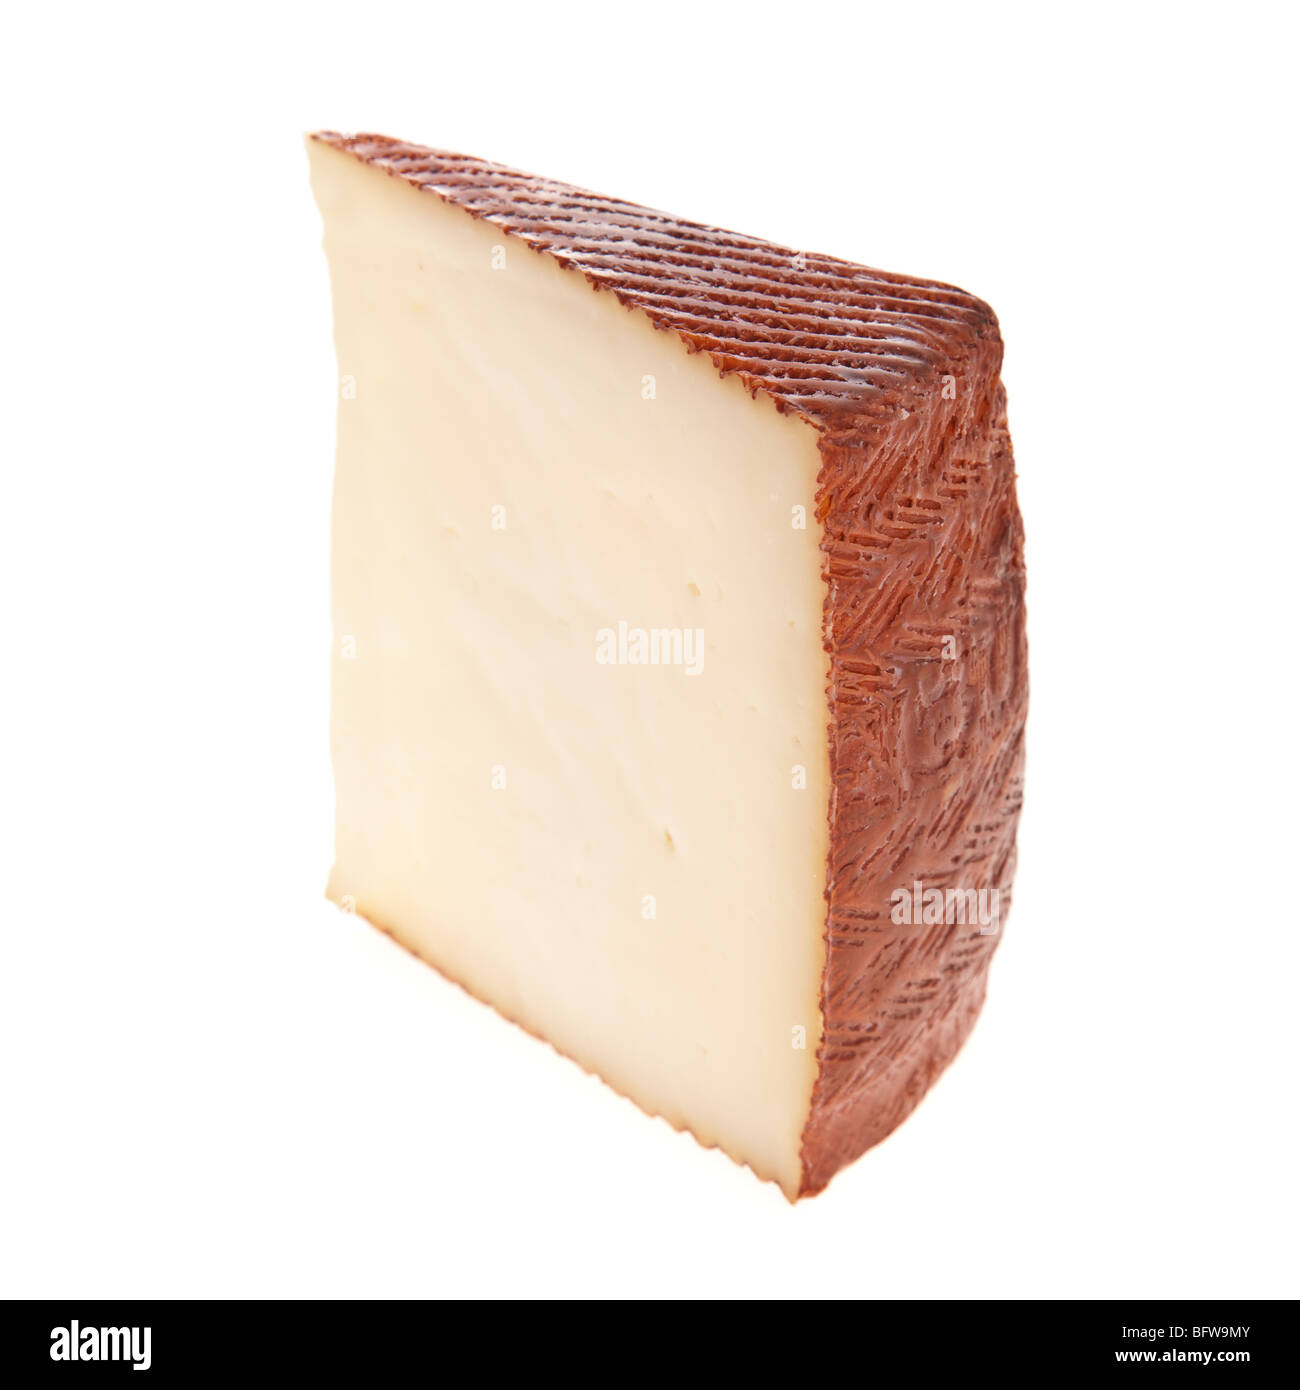 Tranche de fromage de chèvre isolé sur fond blanc Banque D'Images